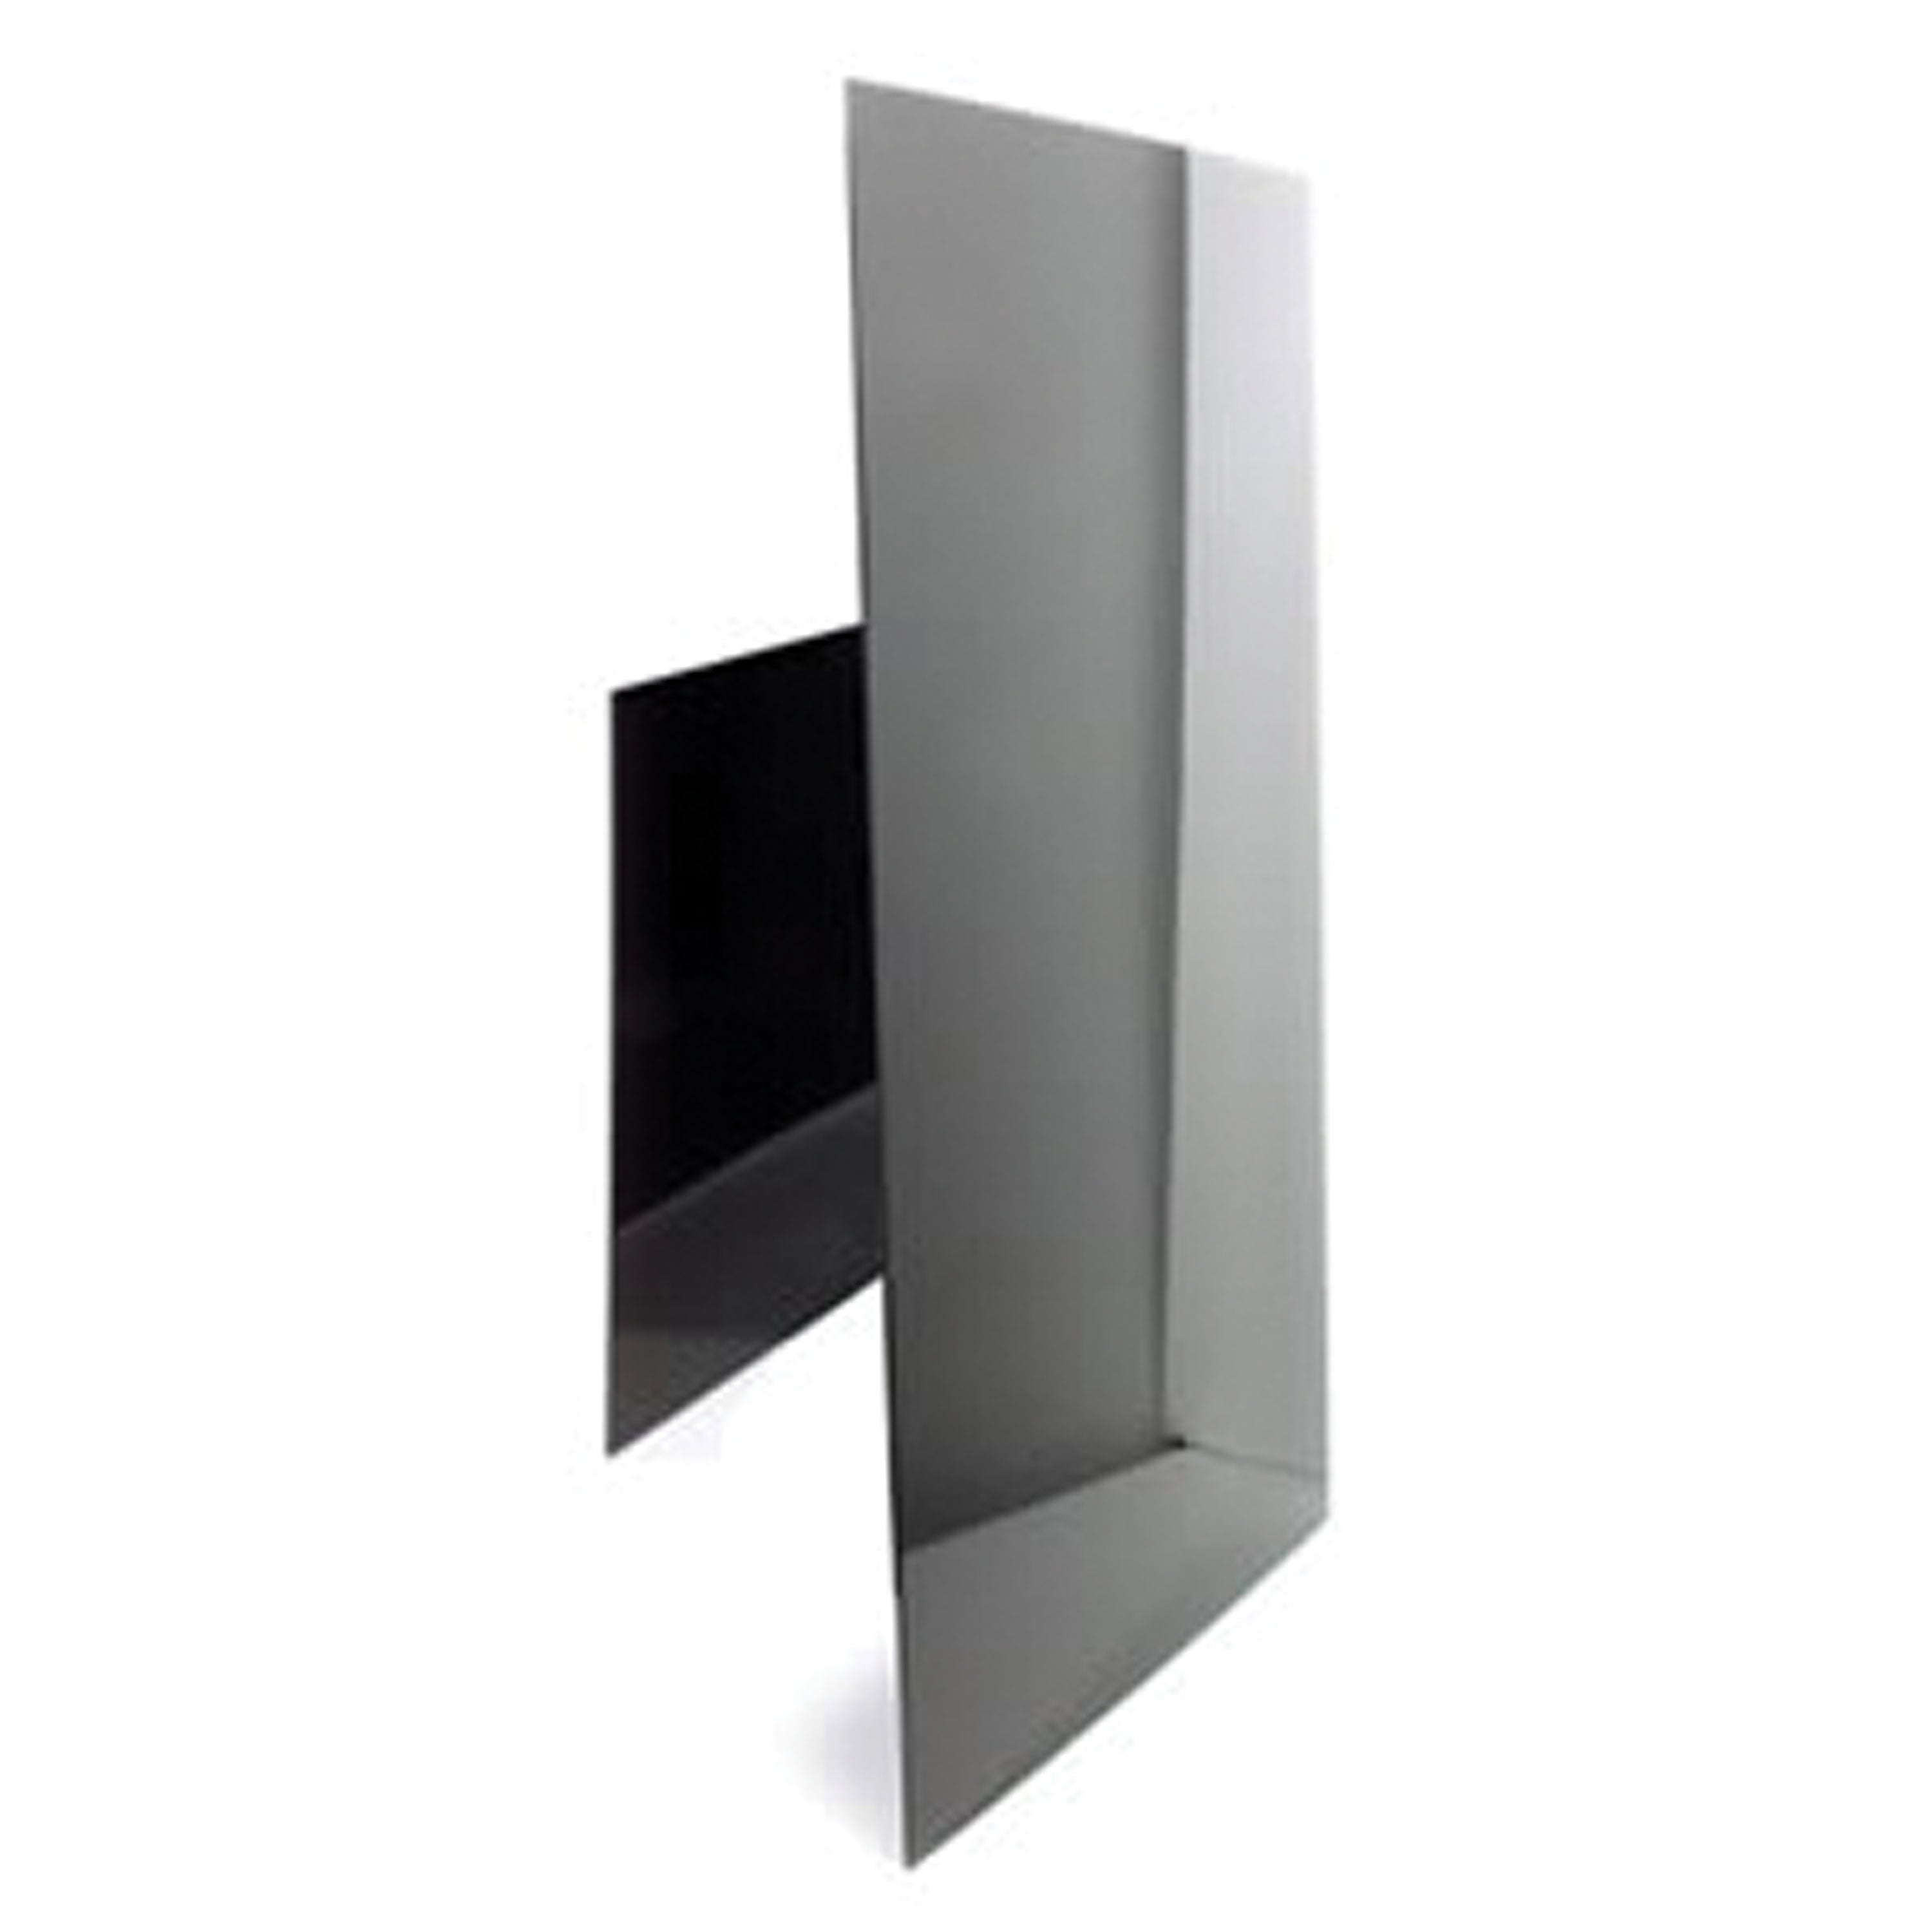 Norcold 636216 Upper Refrigerator Door Panel for NXA641/NXA841 Models  - Black Acrylic